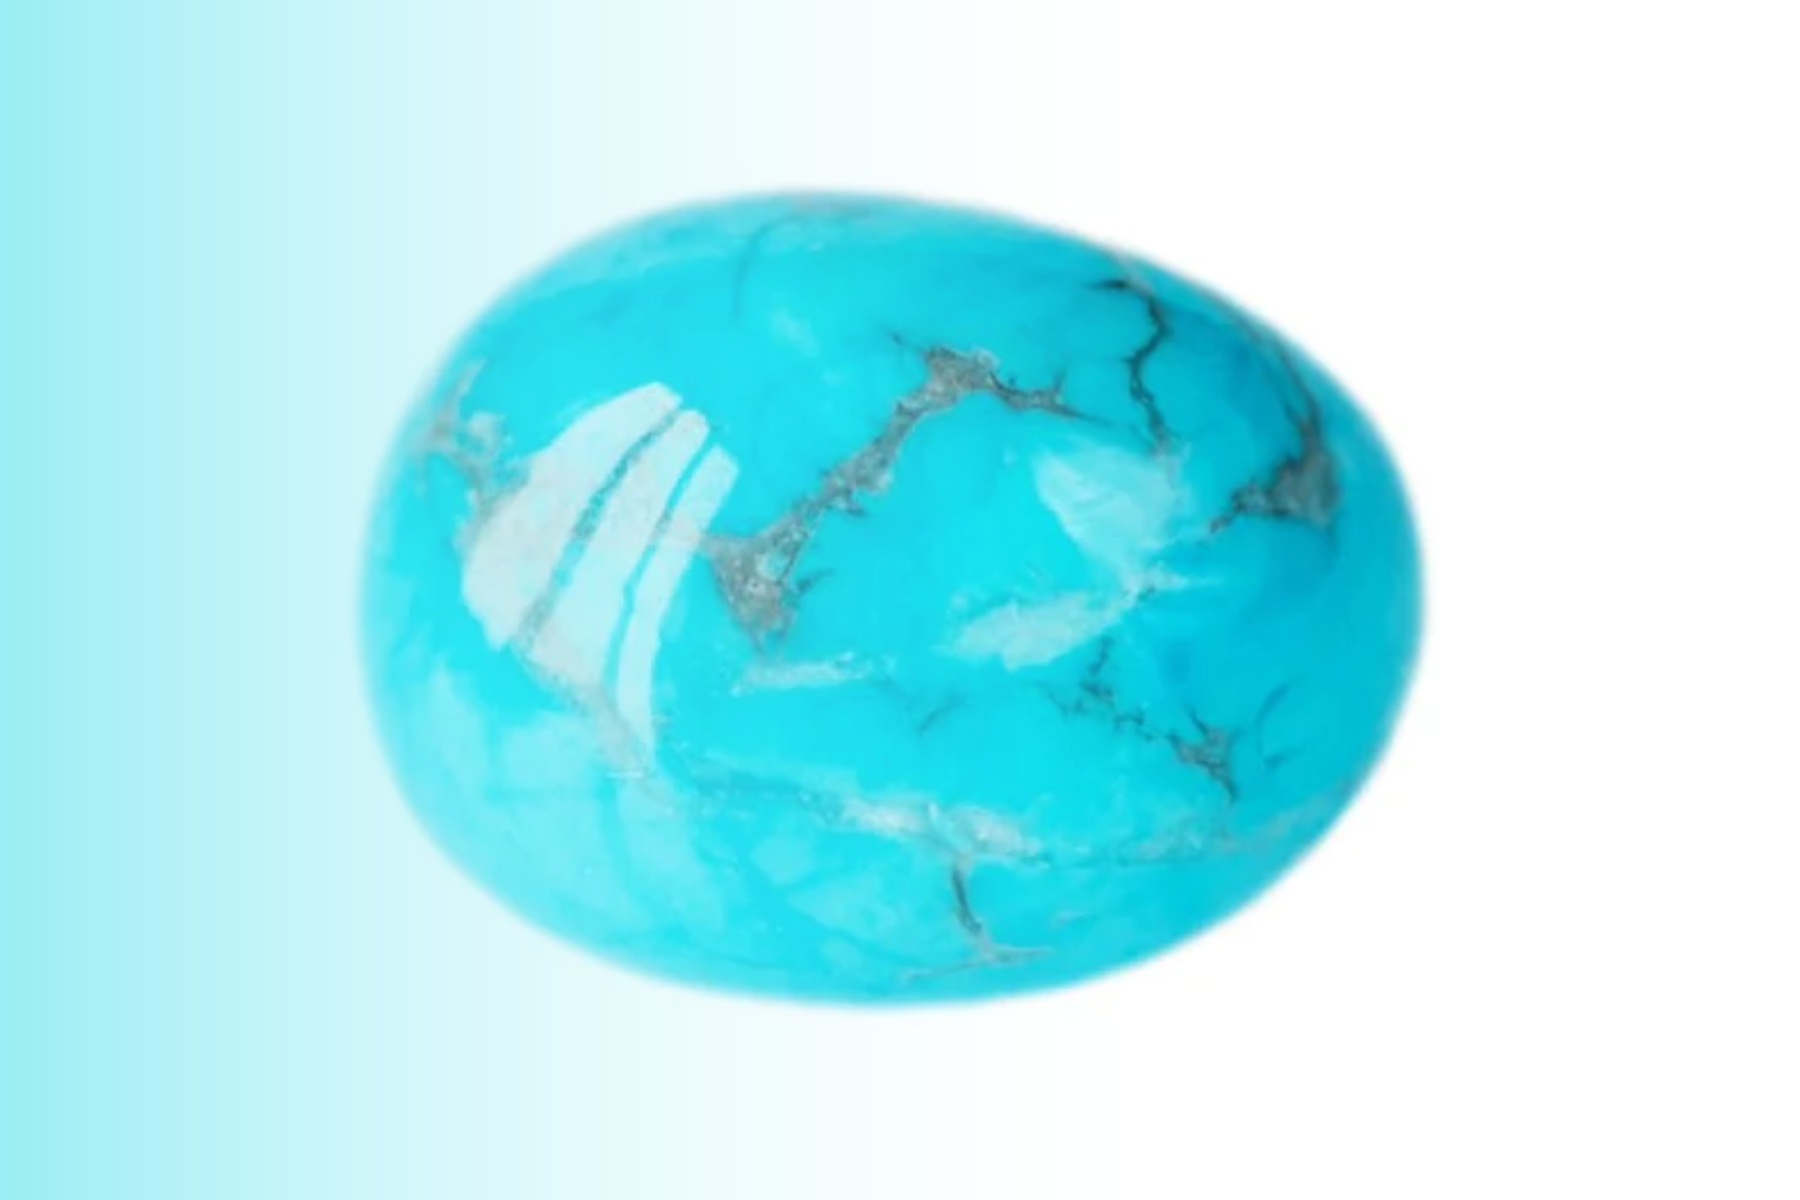 Oblong turquoise stone